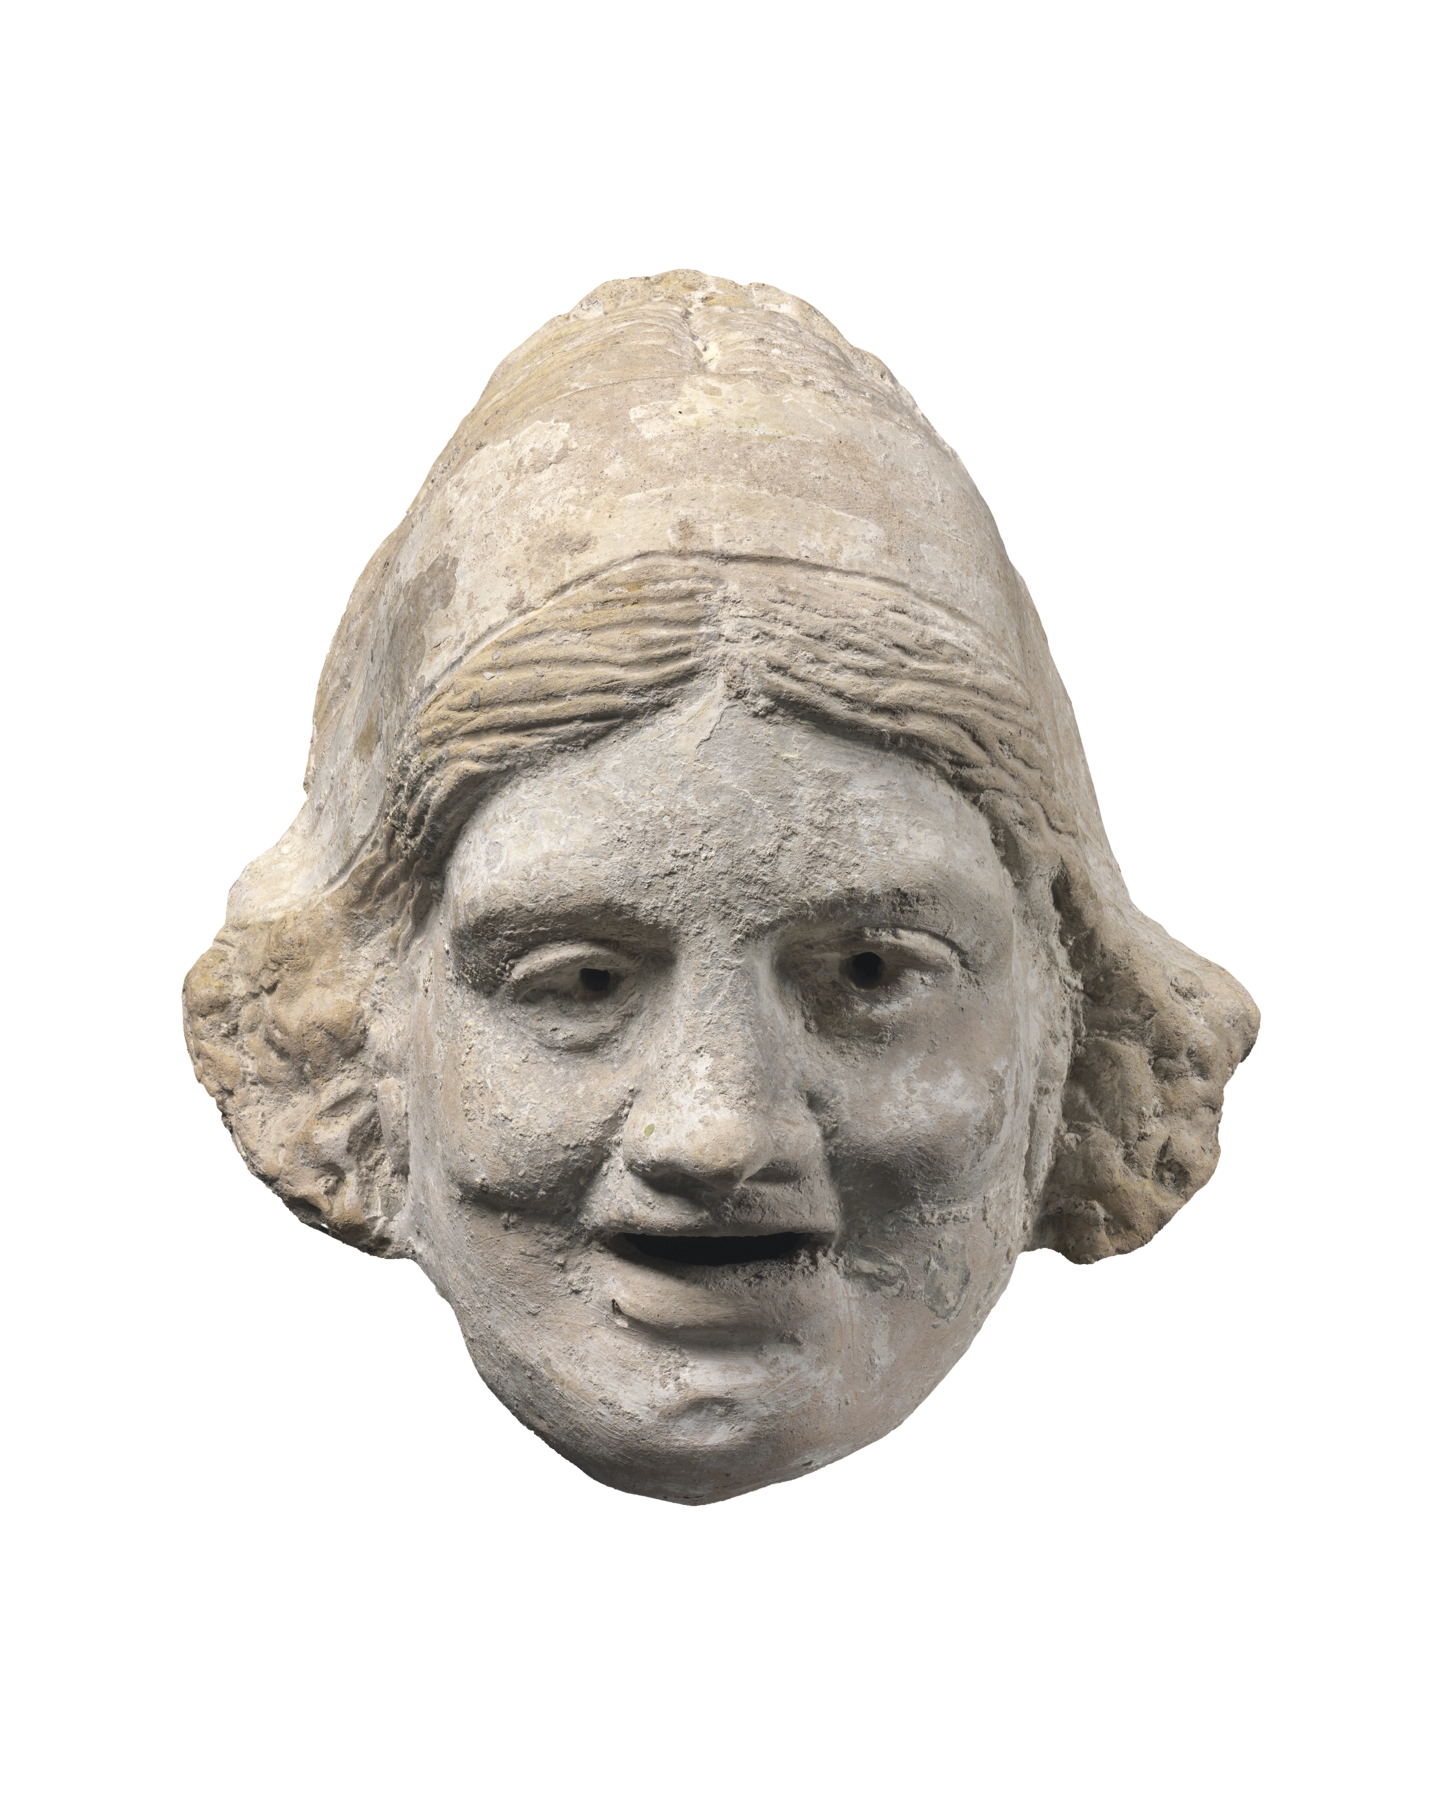 Fotografia. Máscara de pedra representando uma mulher. Tem cabelos curtos, olhos pequenos, bochechas proeminentes e boca entreaberta, levemente sorridente.